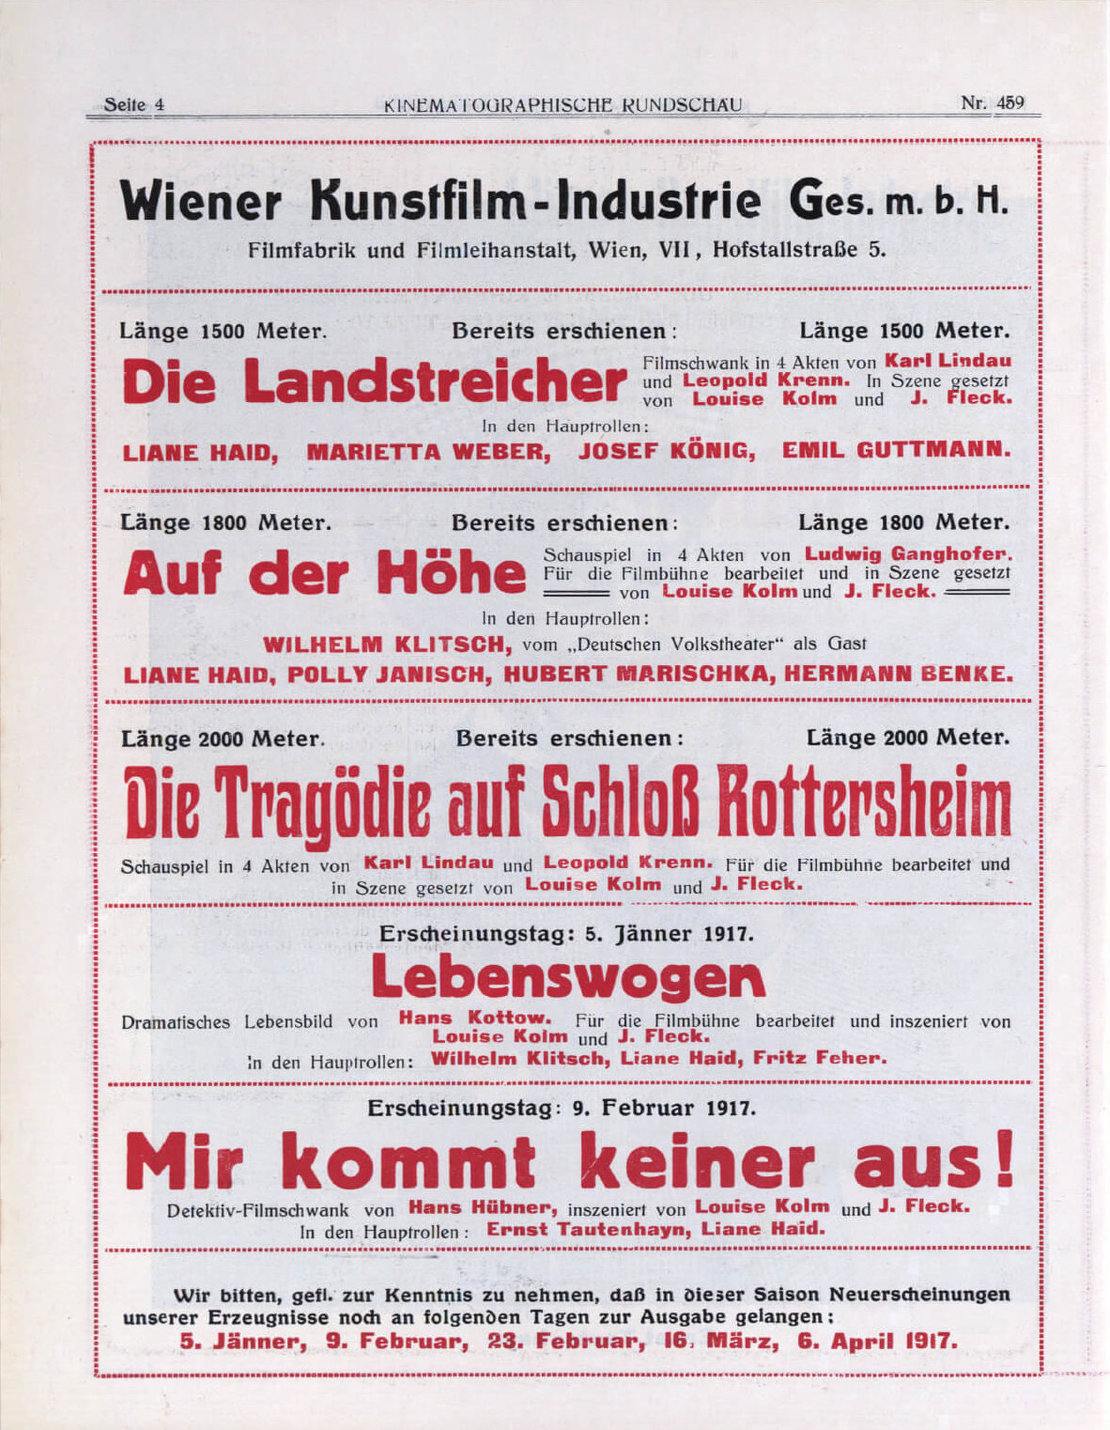 Die Wiener Kunstfilm-Industrie bewirbt ihre neuesten Filmproduktionen in der Kinematographischen Rundschau vom 24.12.1916, ÖNB / Anno 